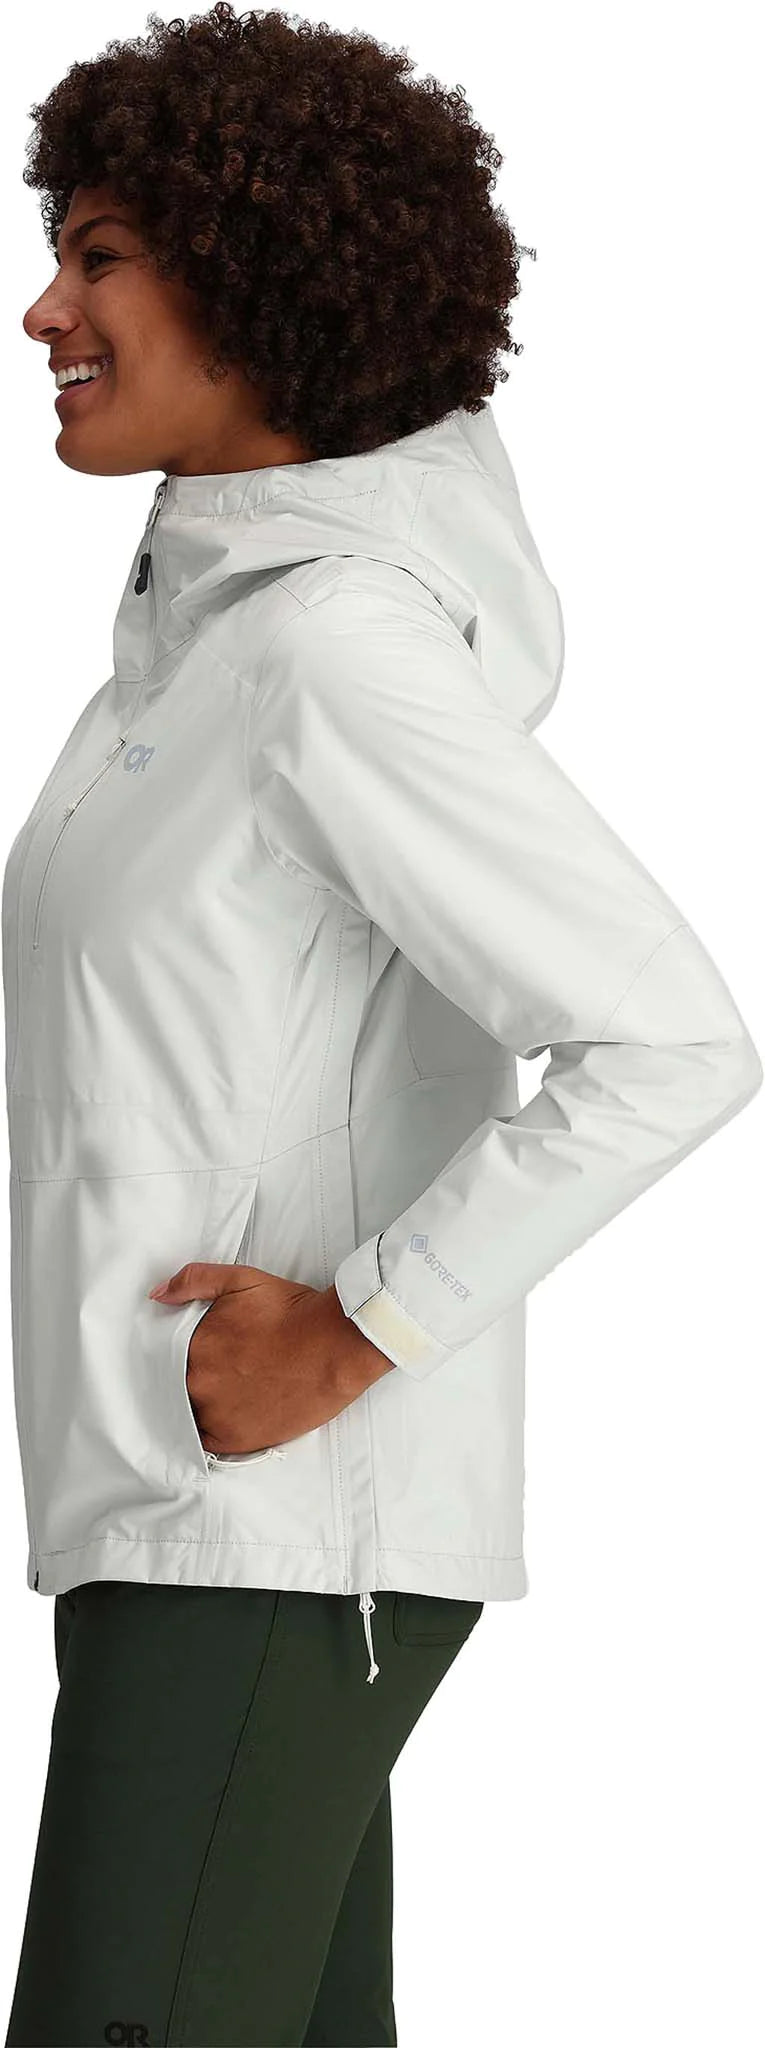 Outdoor Research Women's Aspire II Jacket w/ Adjustable Hood